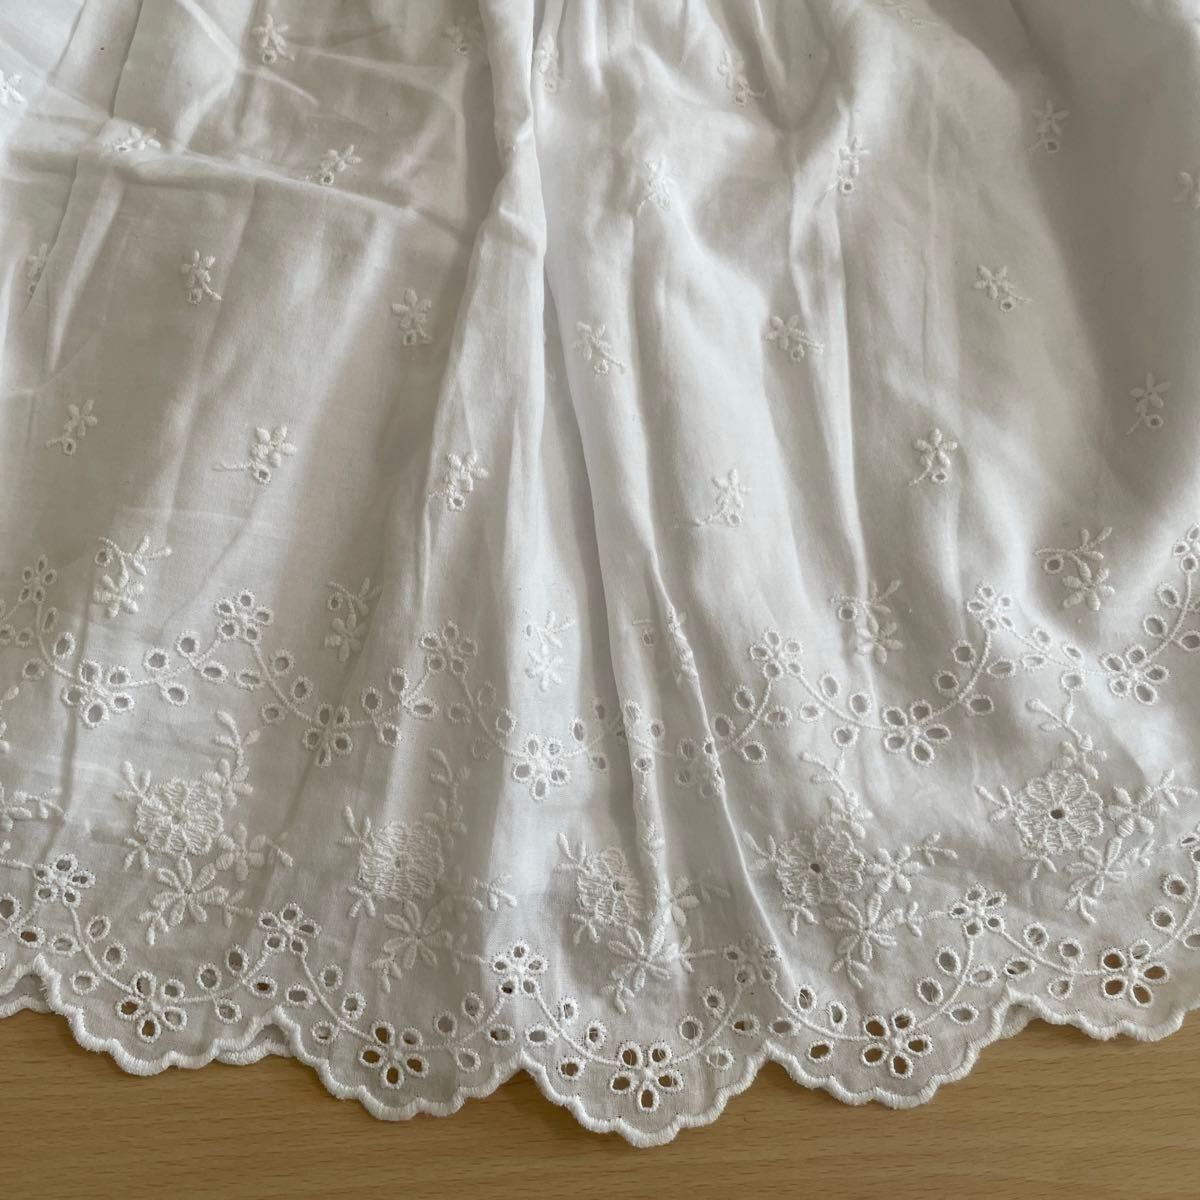 韓国子供服(LITTLEB)スカート(90cm)